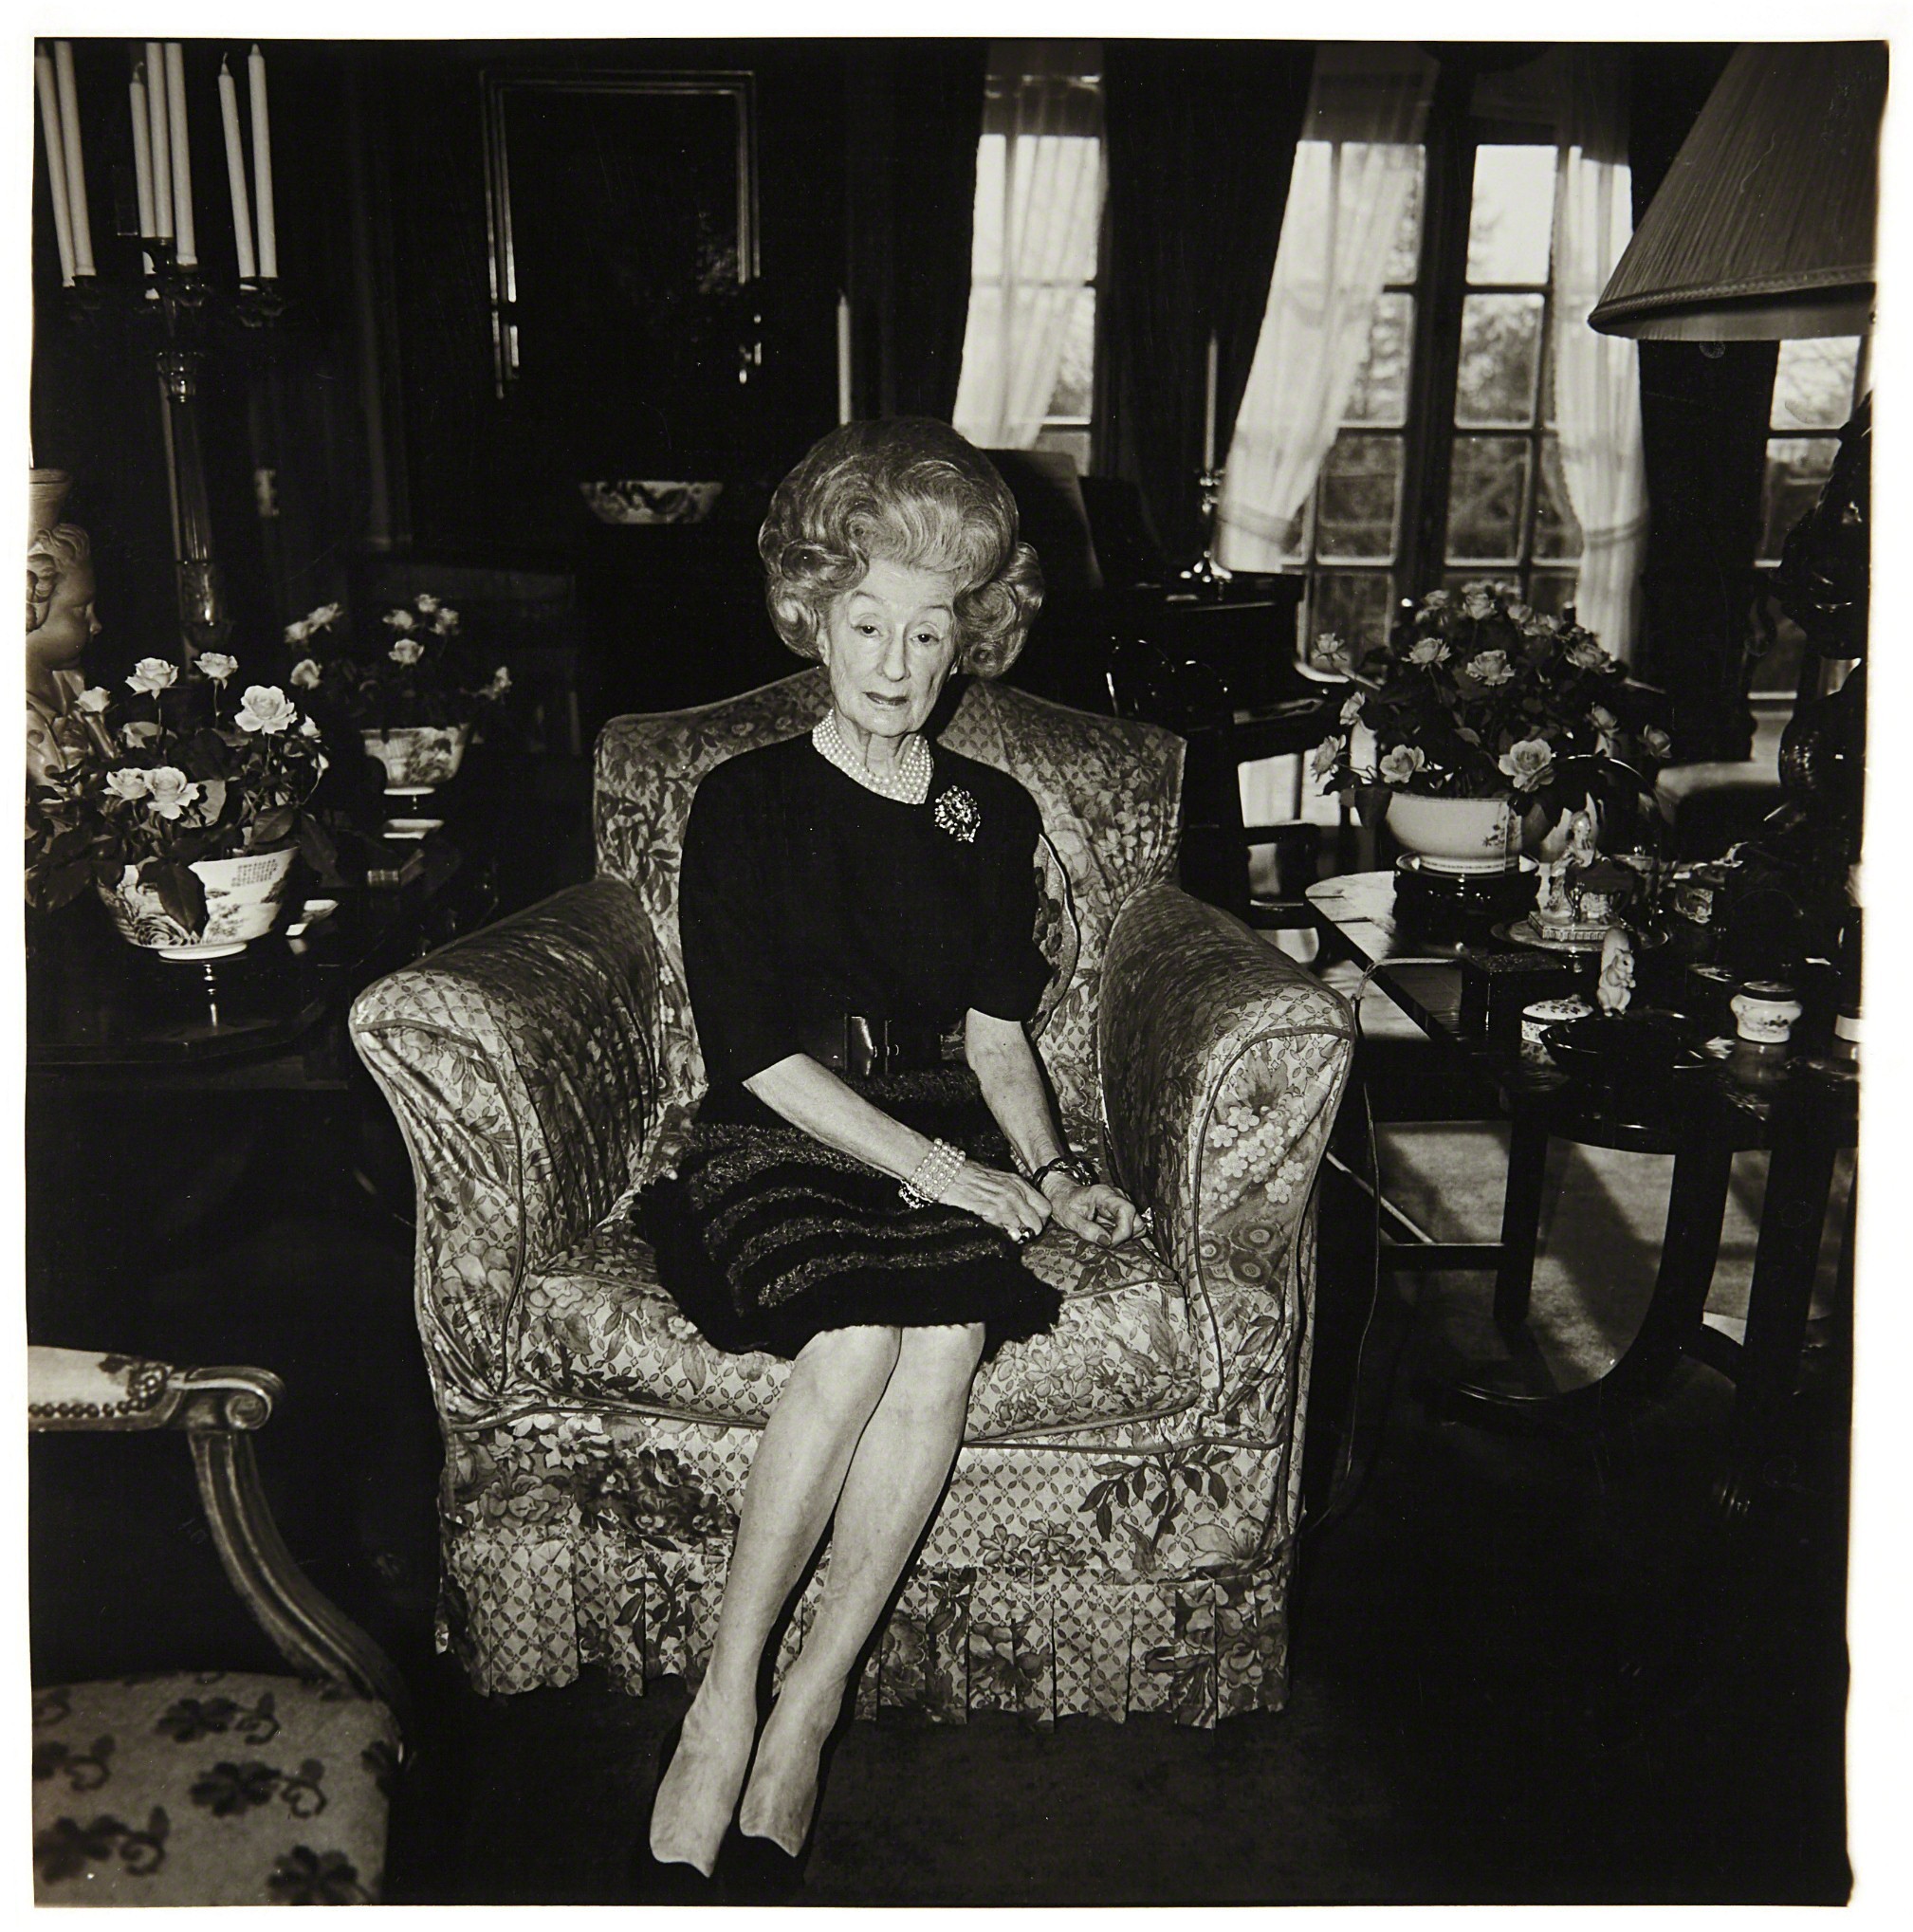 Миссис Т. Чарльтон Генри на цветочном кресле, Филадельфия, Пенсильвания, 1965. Фотограф Диана Арбус